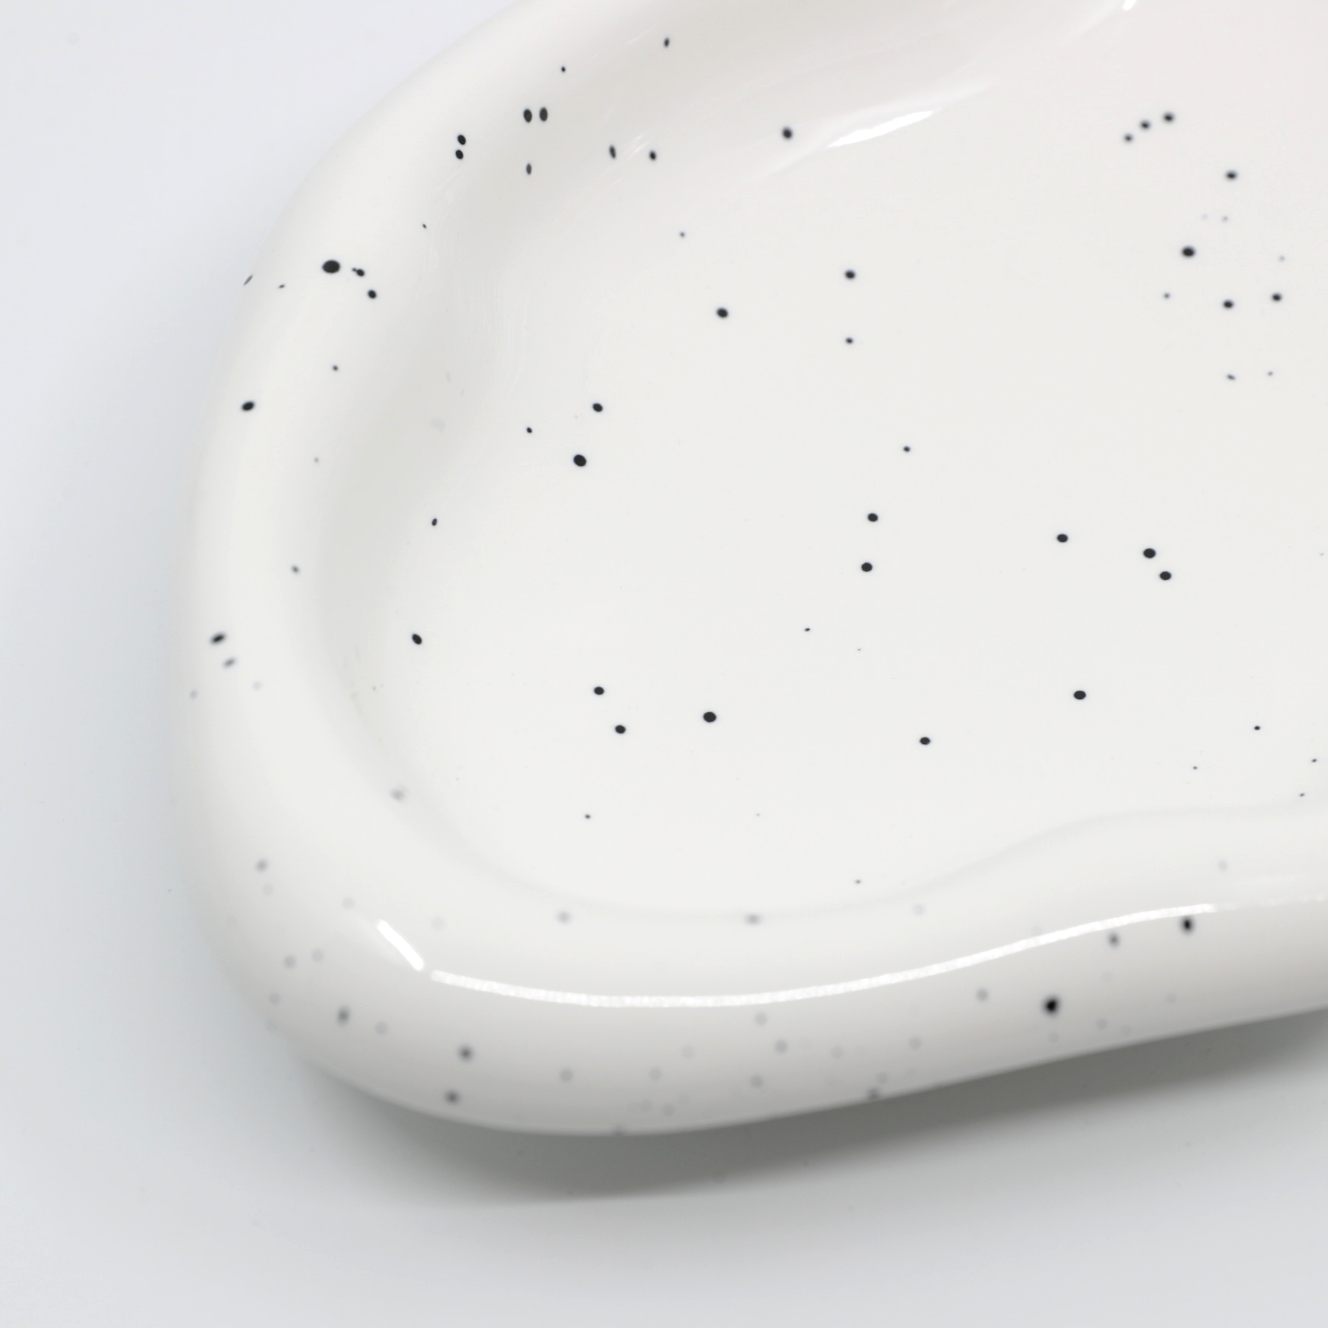 Warbled Ceramic - Large Speckled Bowl